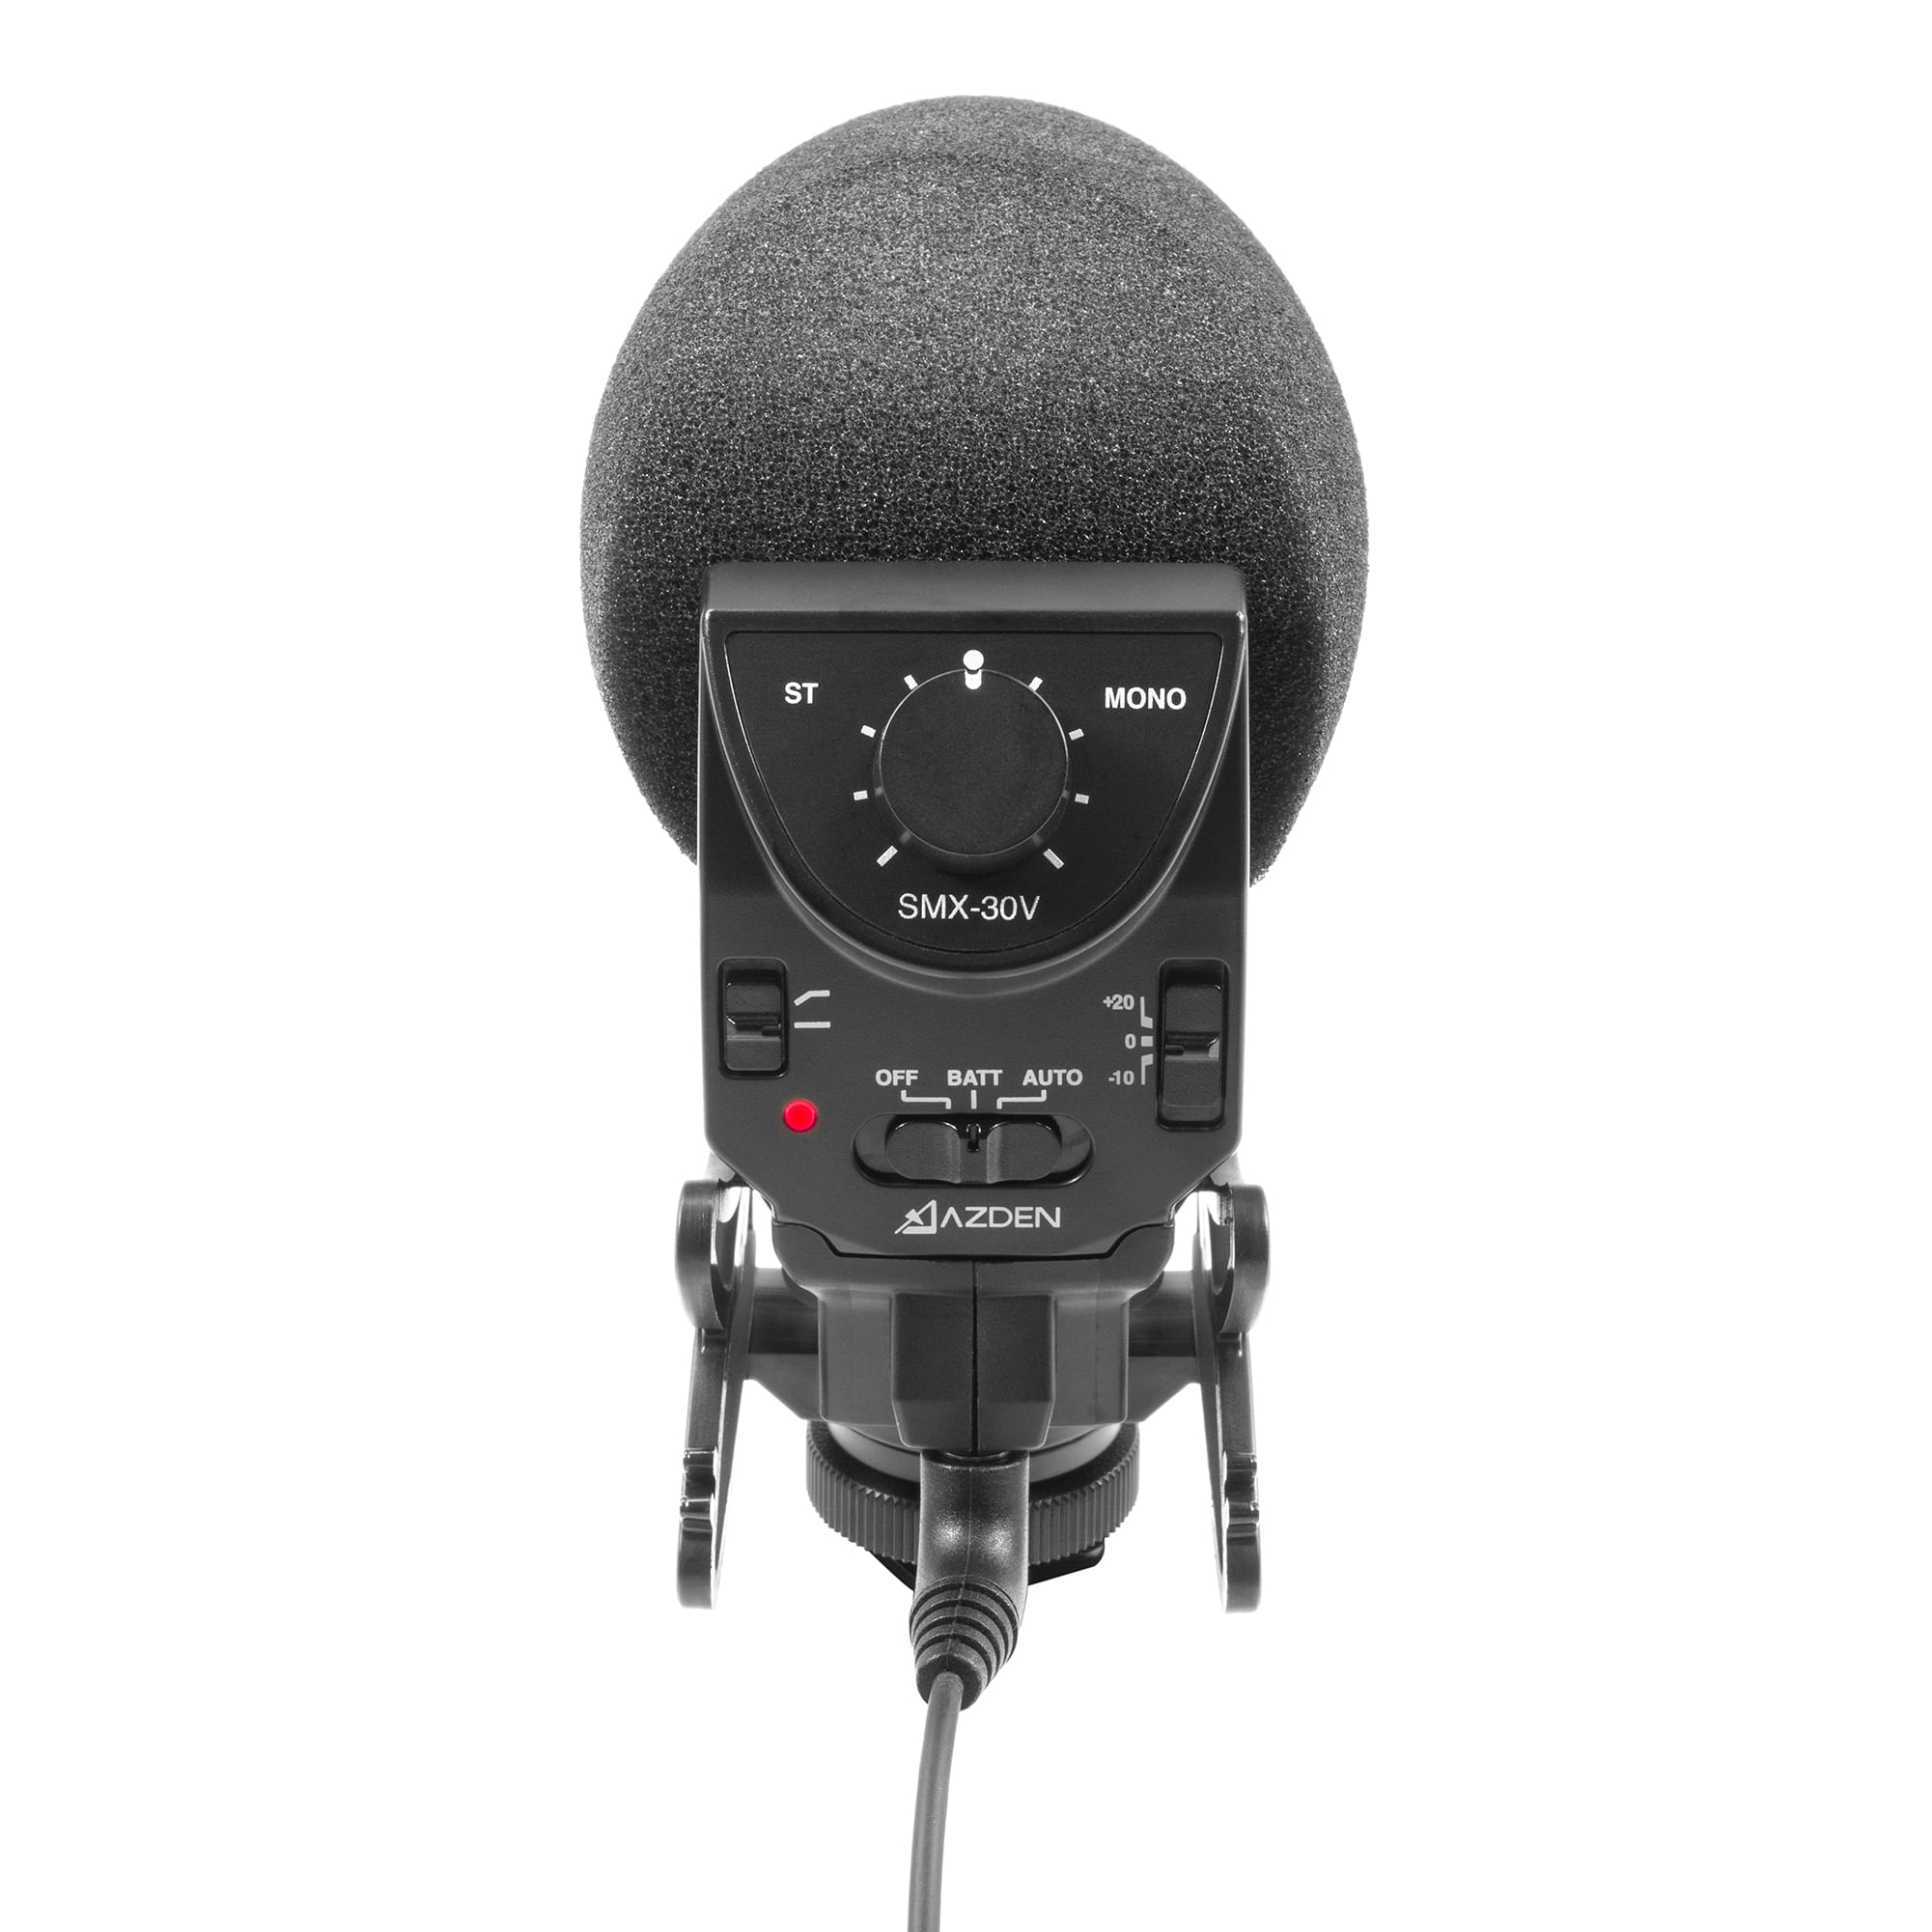 SMX-30V Stereo/Mono Mixable Video Microphone - Azden